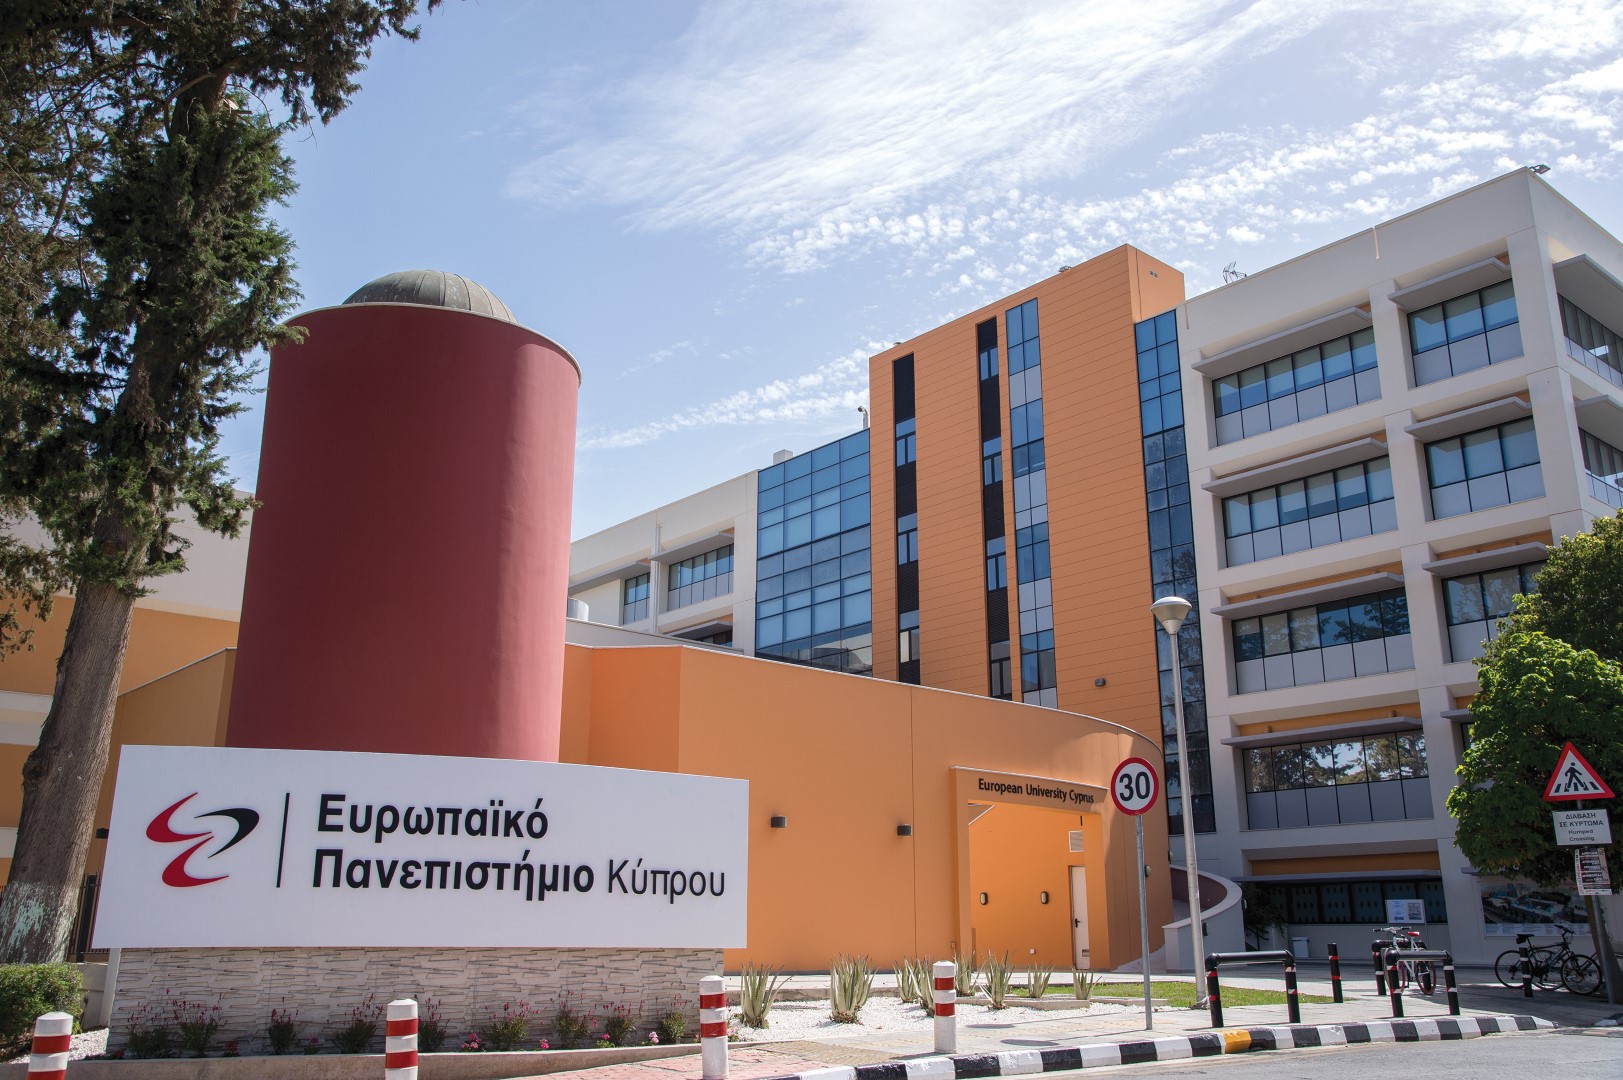 Ευρωπαϊκό Πανεπιστήμιο Κύπρου: Ποιότητα, Καινοτομία Και Ανάπτυξη